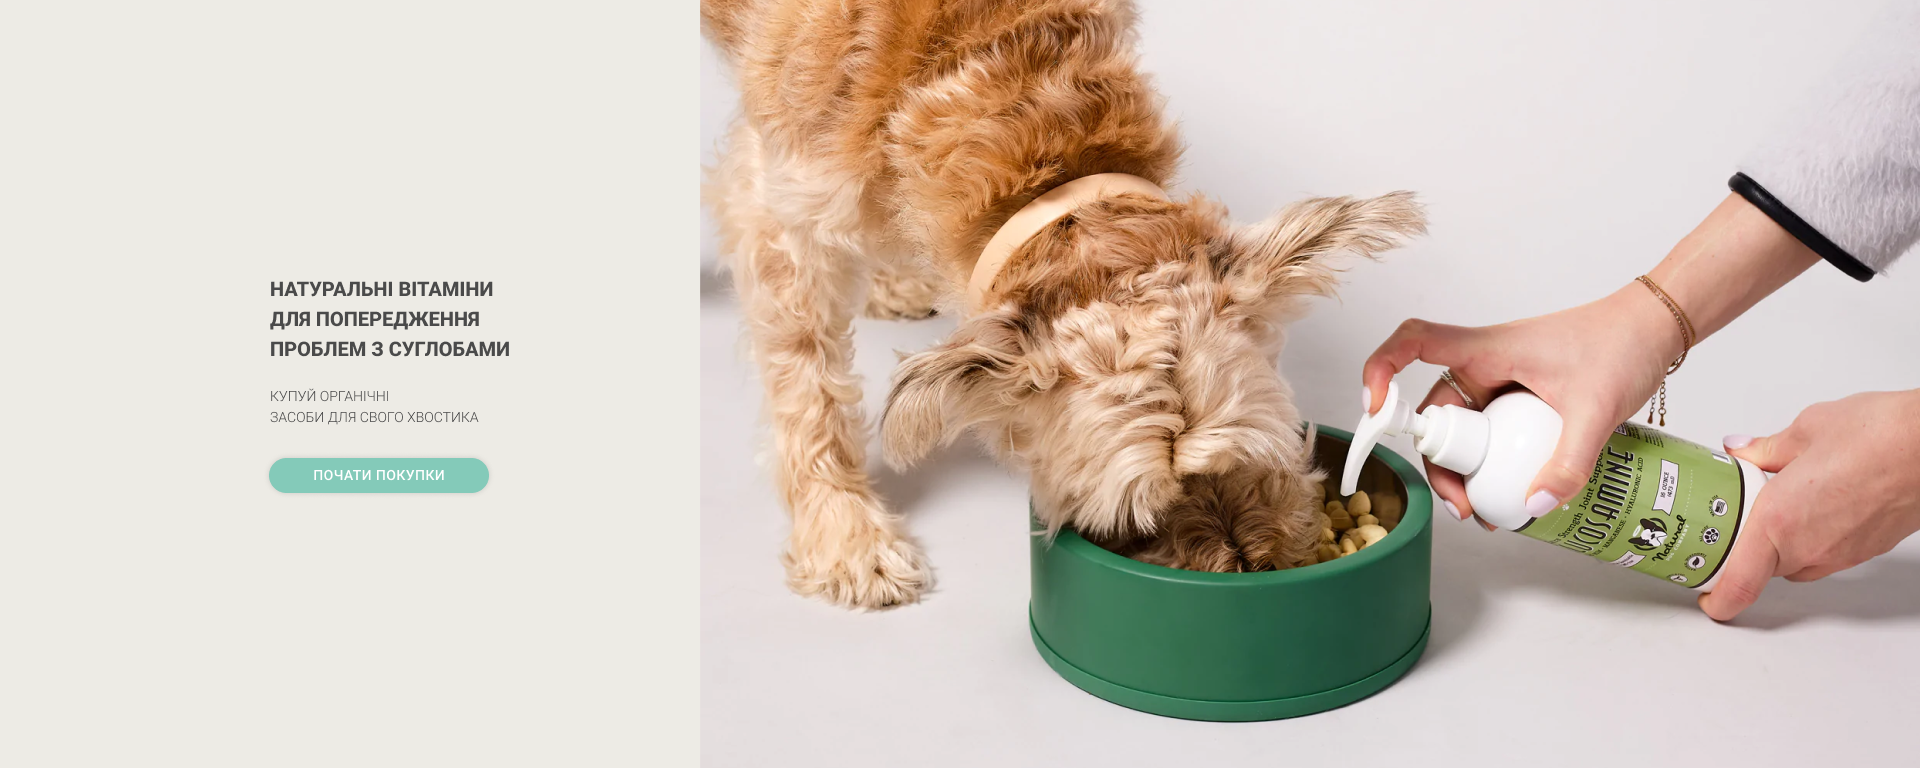 Вітамінні добавки для собак для здорових суглобів та кісток